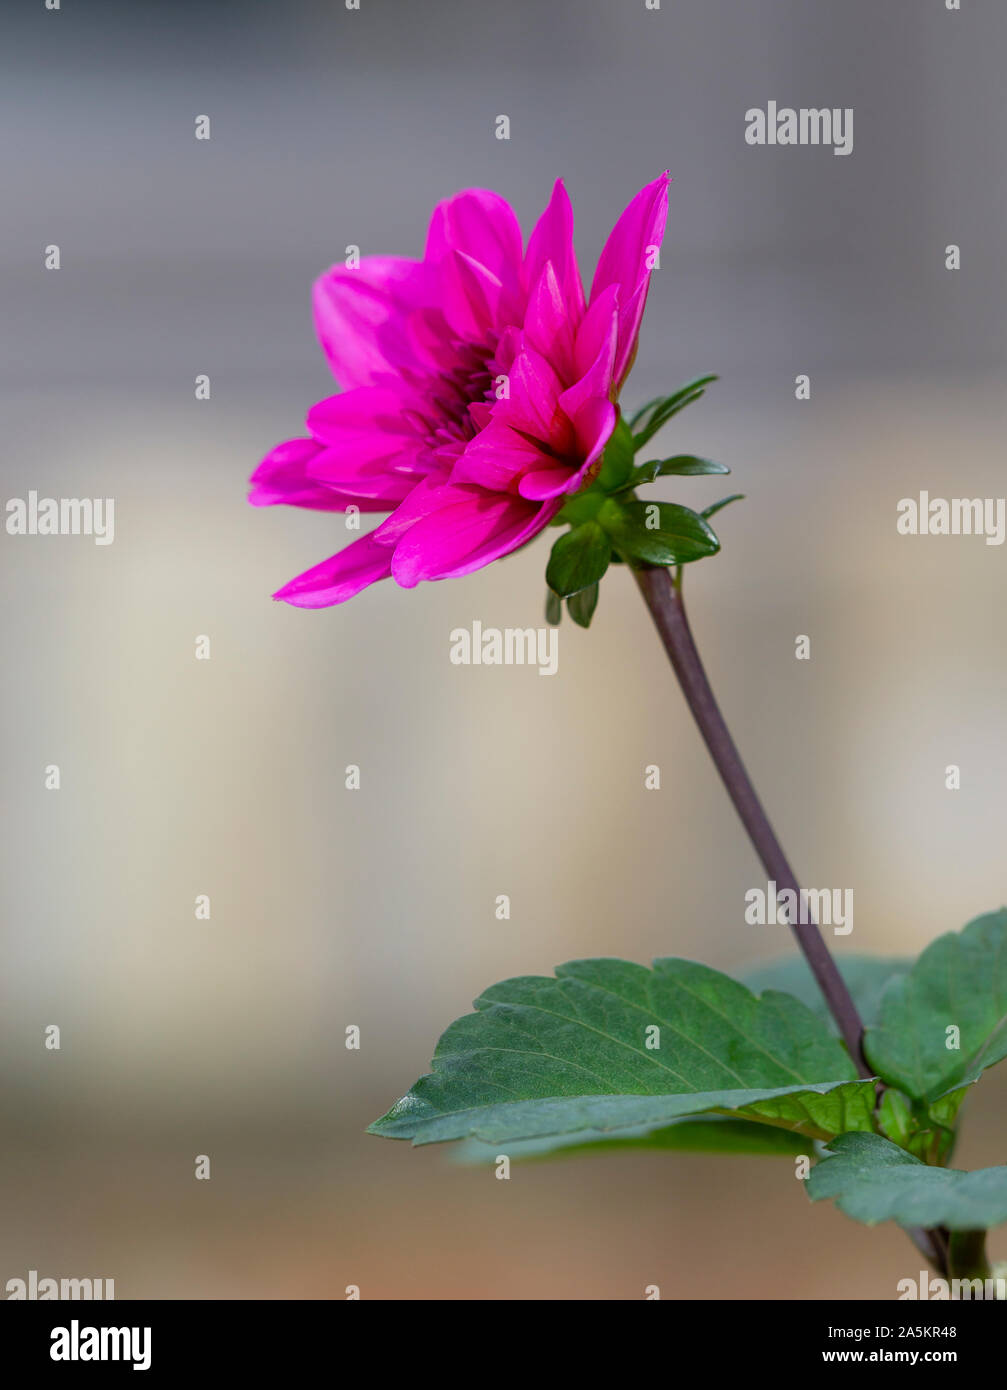 Une fleur rose avec une longue tige et feuilles vertes Photo Stock - Alamy